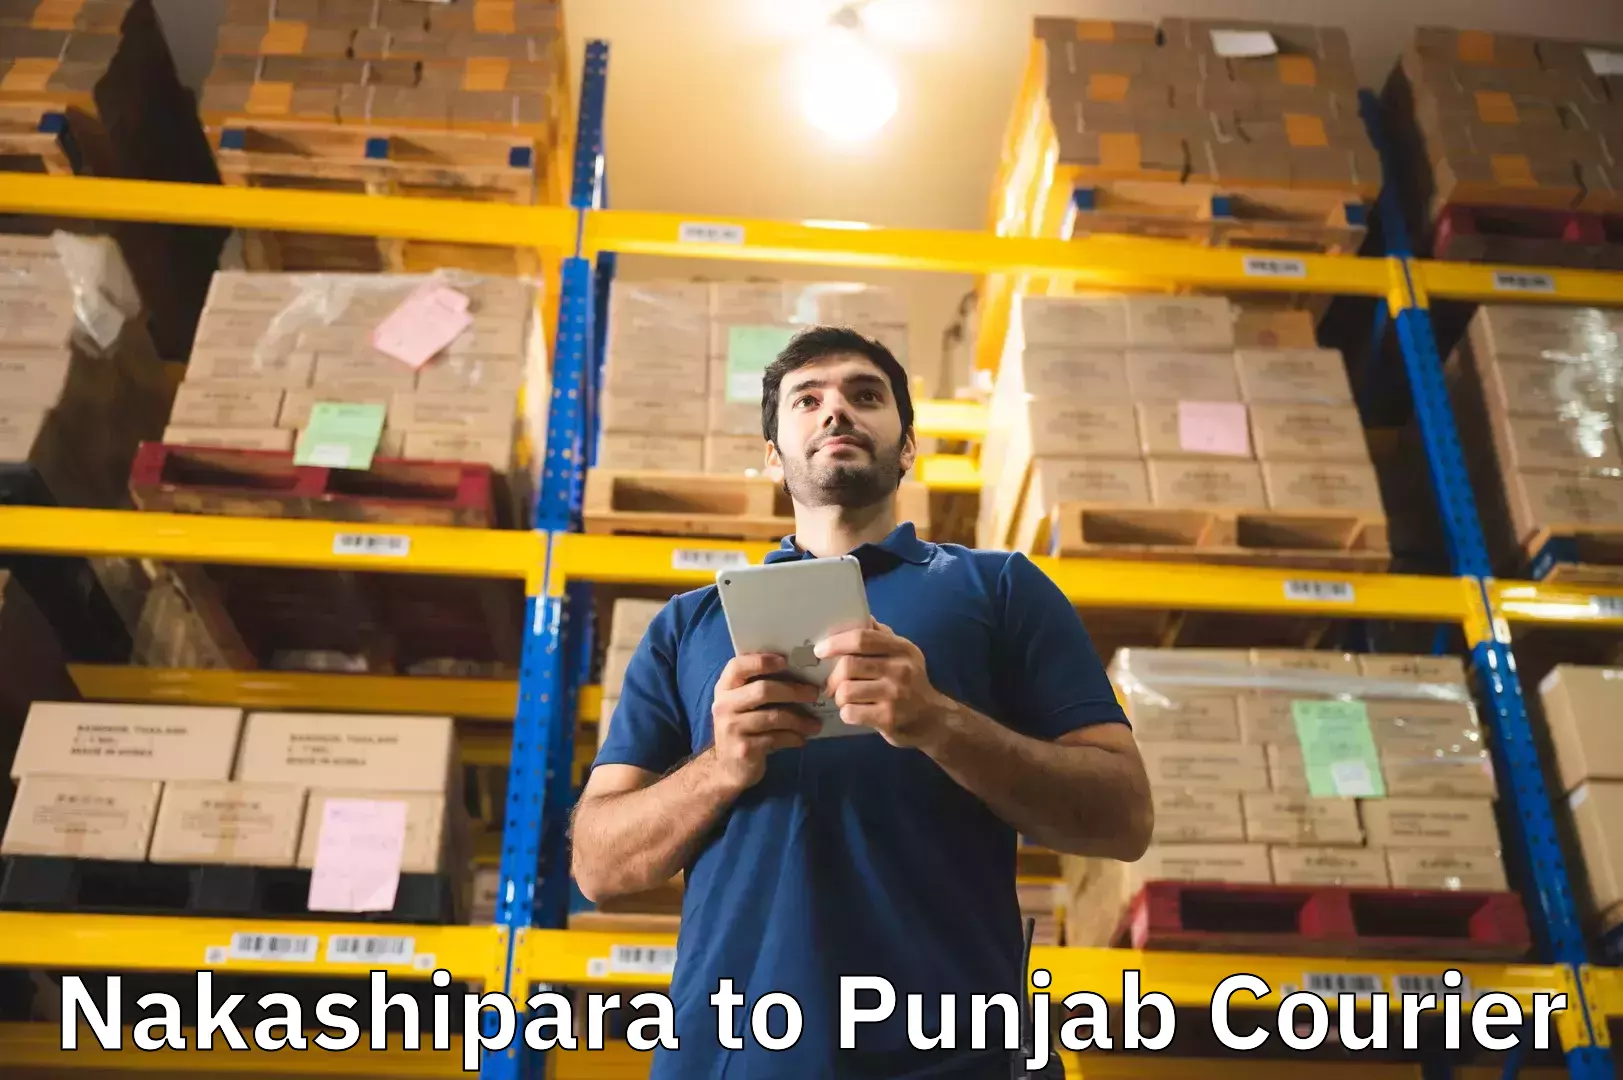 Luggage shipment specialists Nakashipara to Punjab